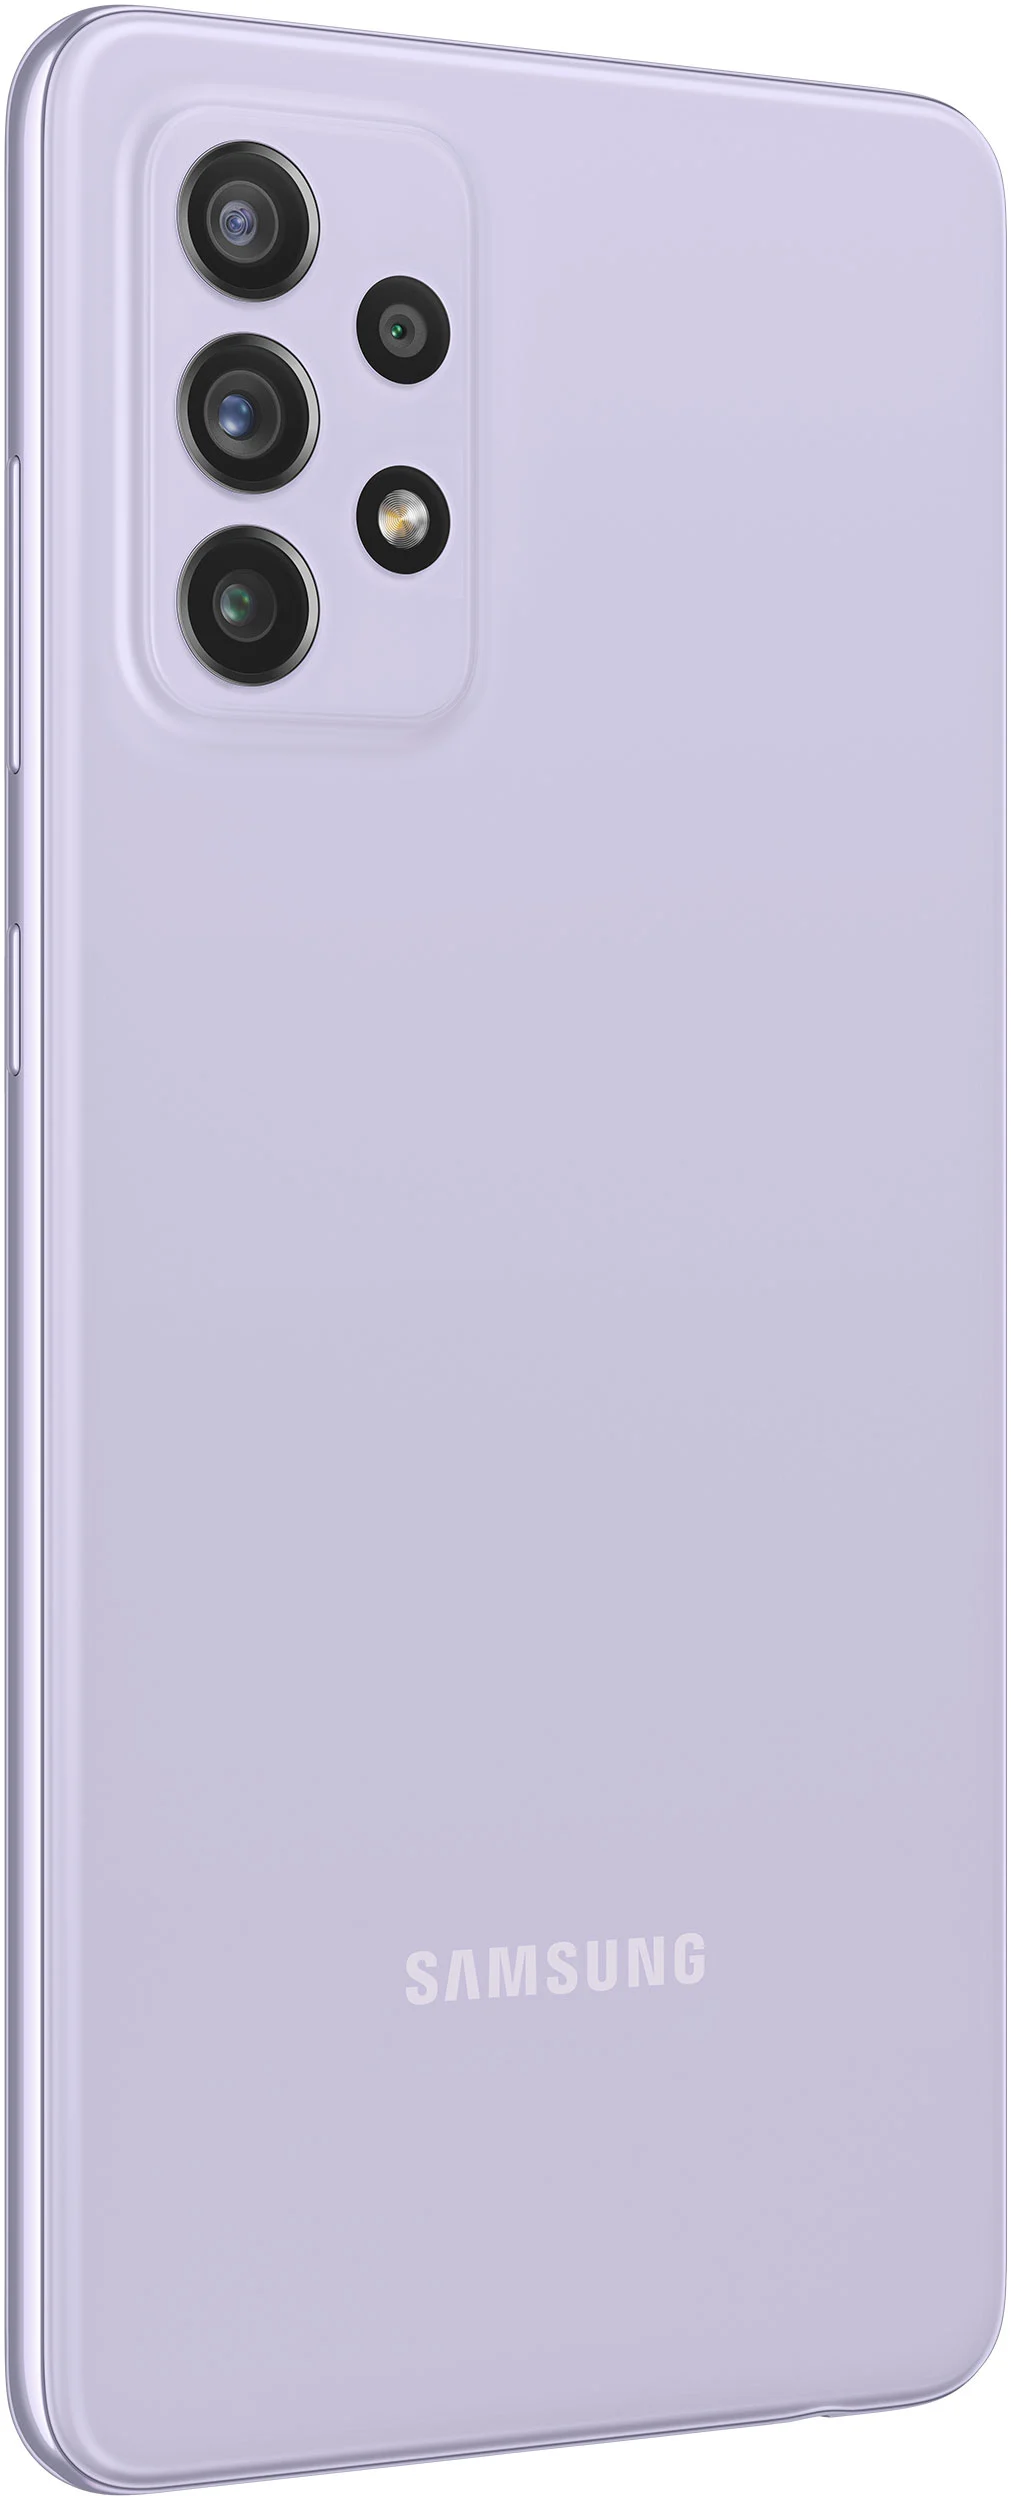 Samsung Galaxy A72 SM-A725F 6/128GB